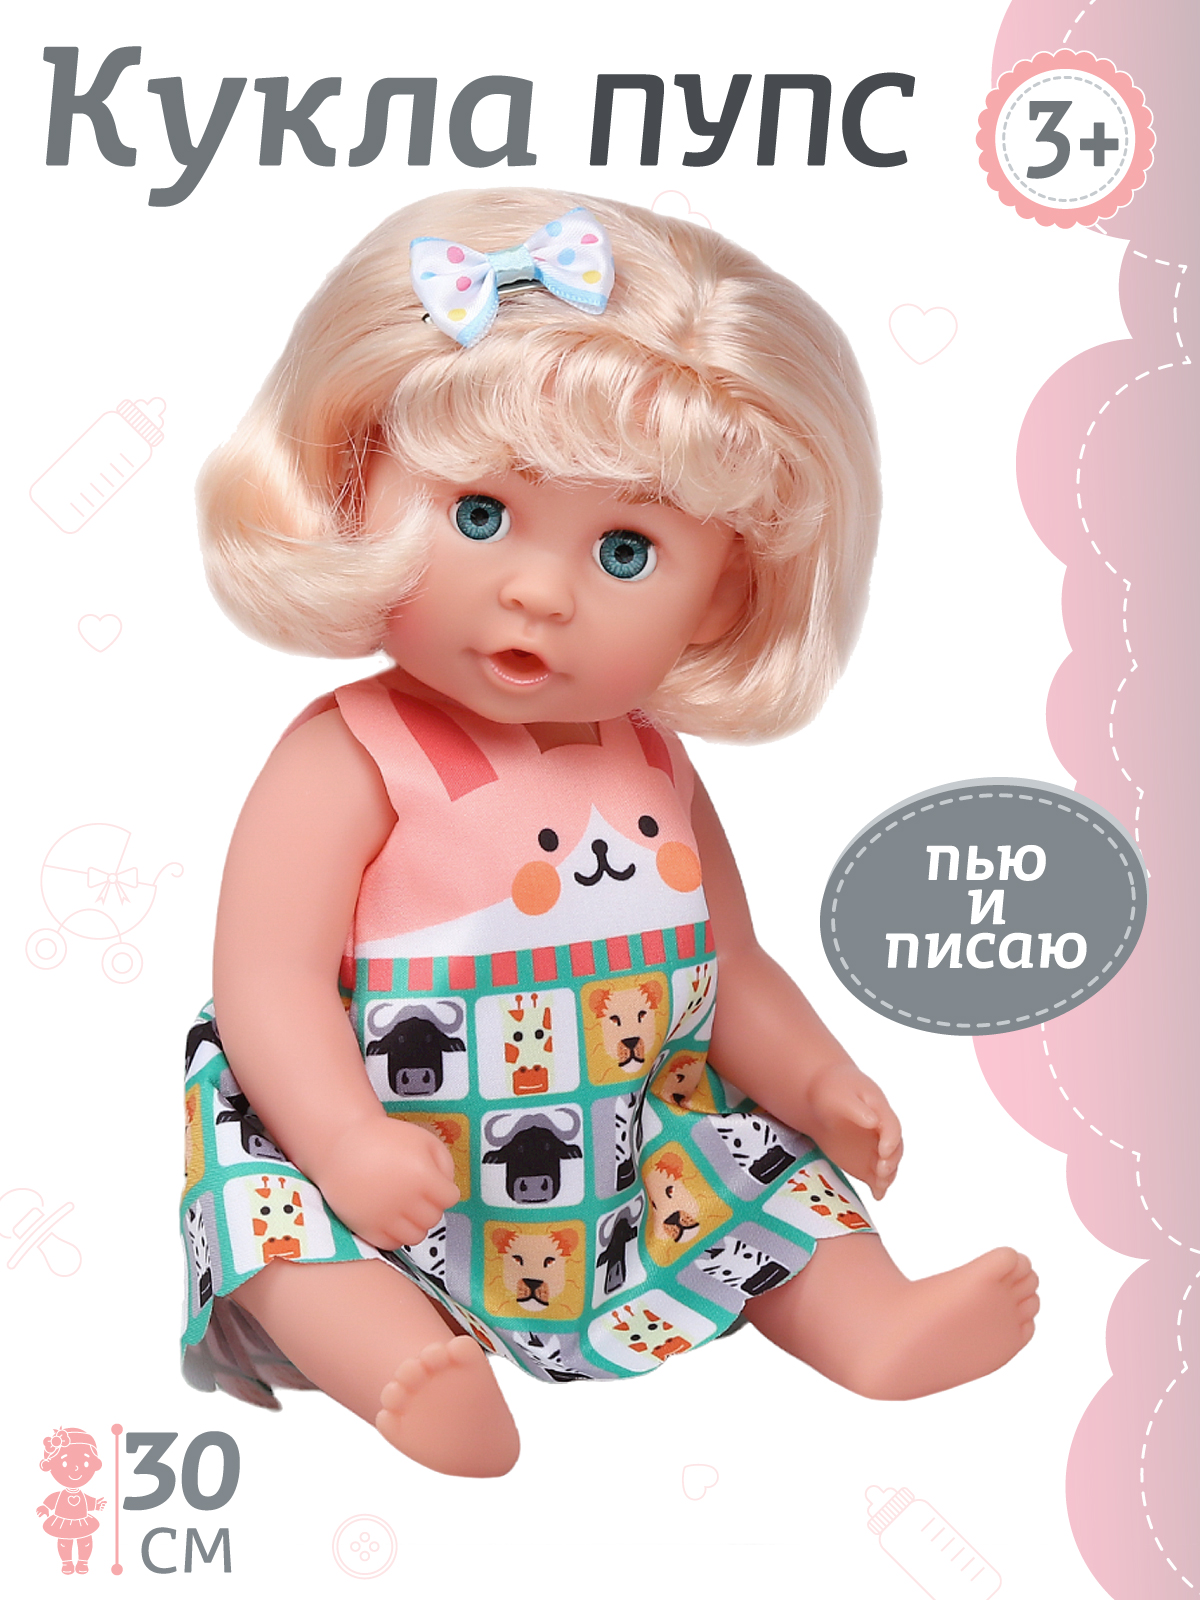 Кукла Amore Bello с аксессуарами, пьет и писает, JB0211158